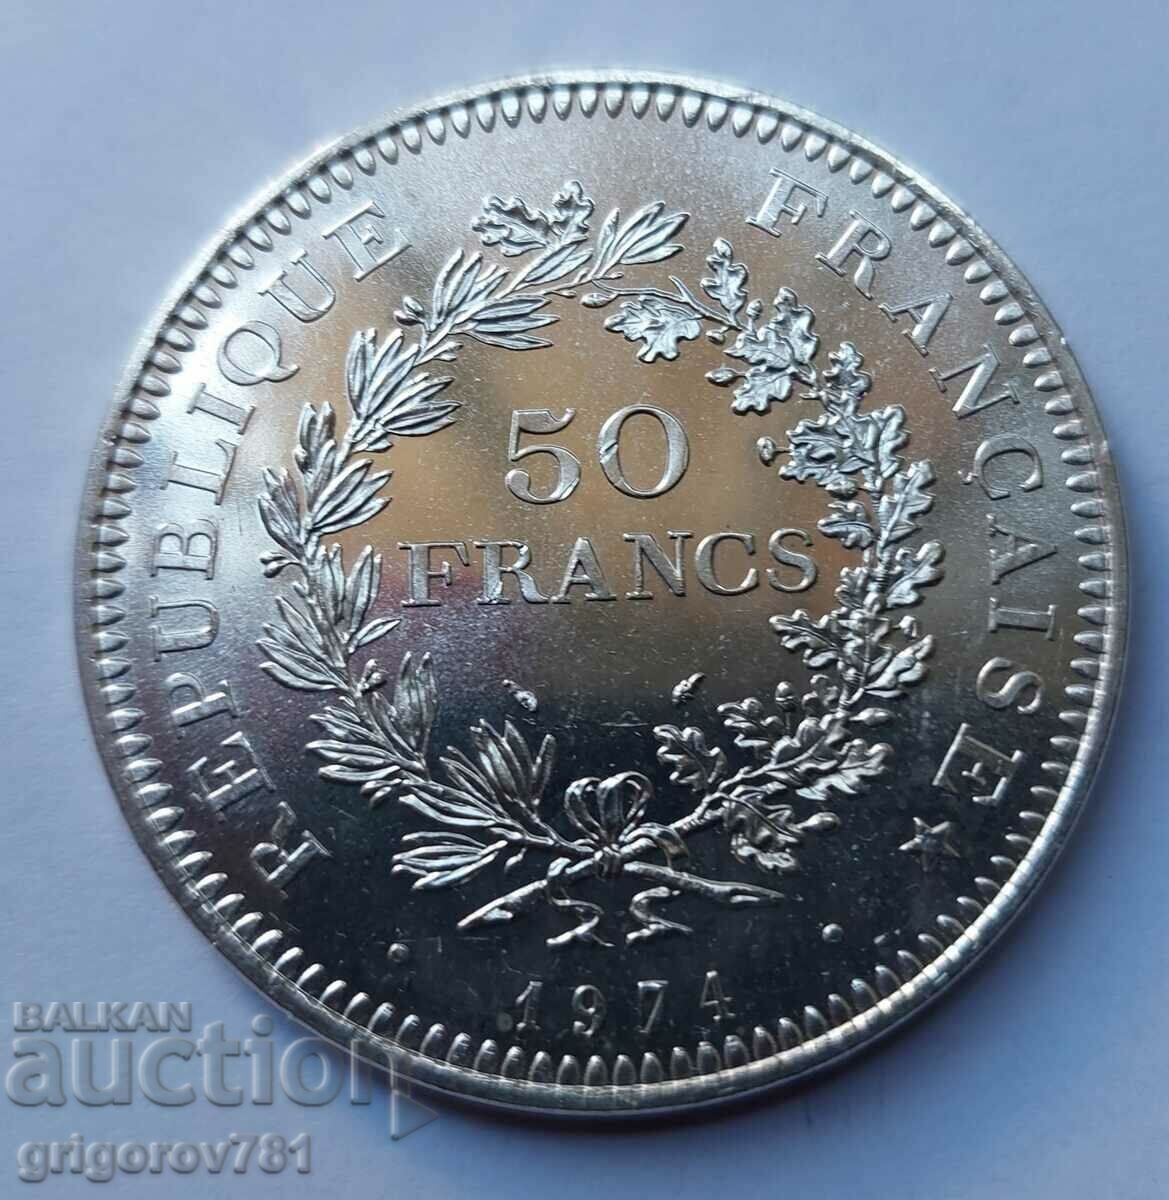 Ασήμι 50 Φράγκων Γαλλία 1974 - Ασημένιο νόμισμα #27